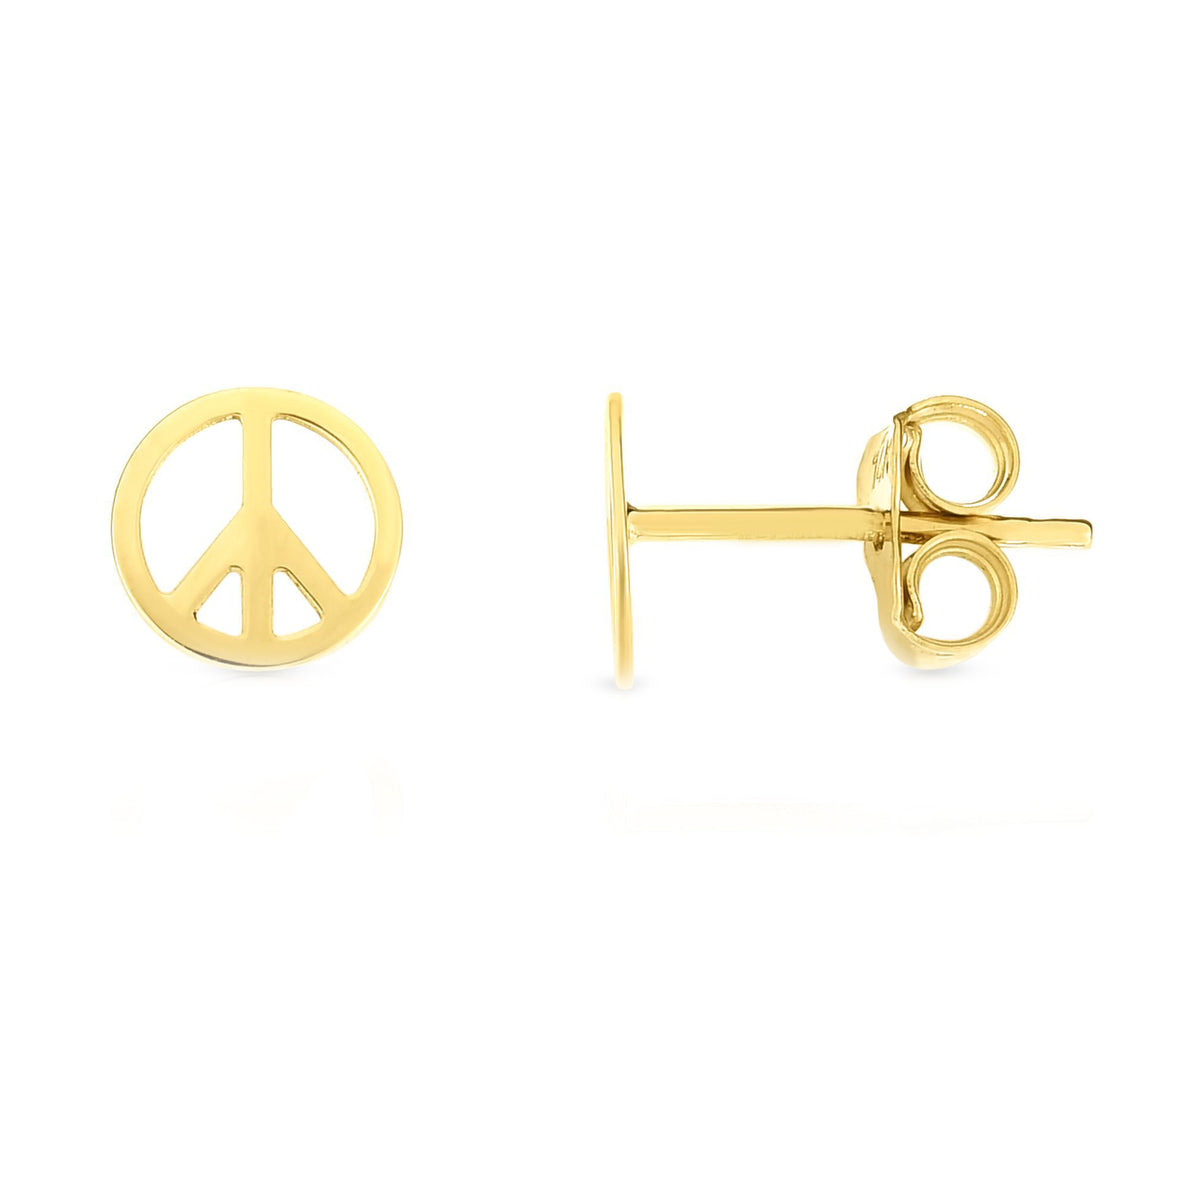 Aretes con signo de la paz en oro amarillo de 14 quilates, joyería fina de diseño para hombres y mujeres